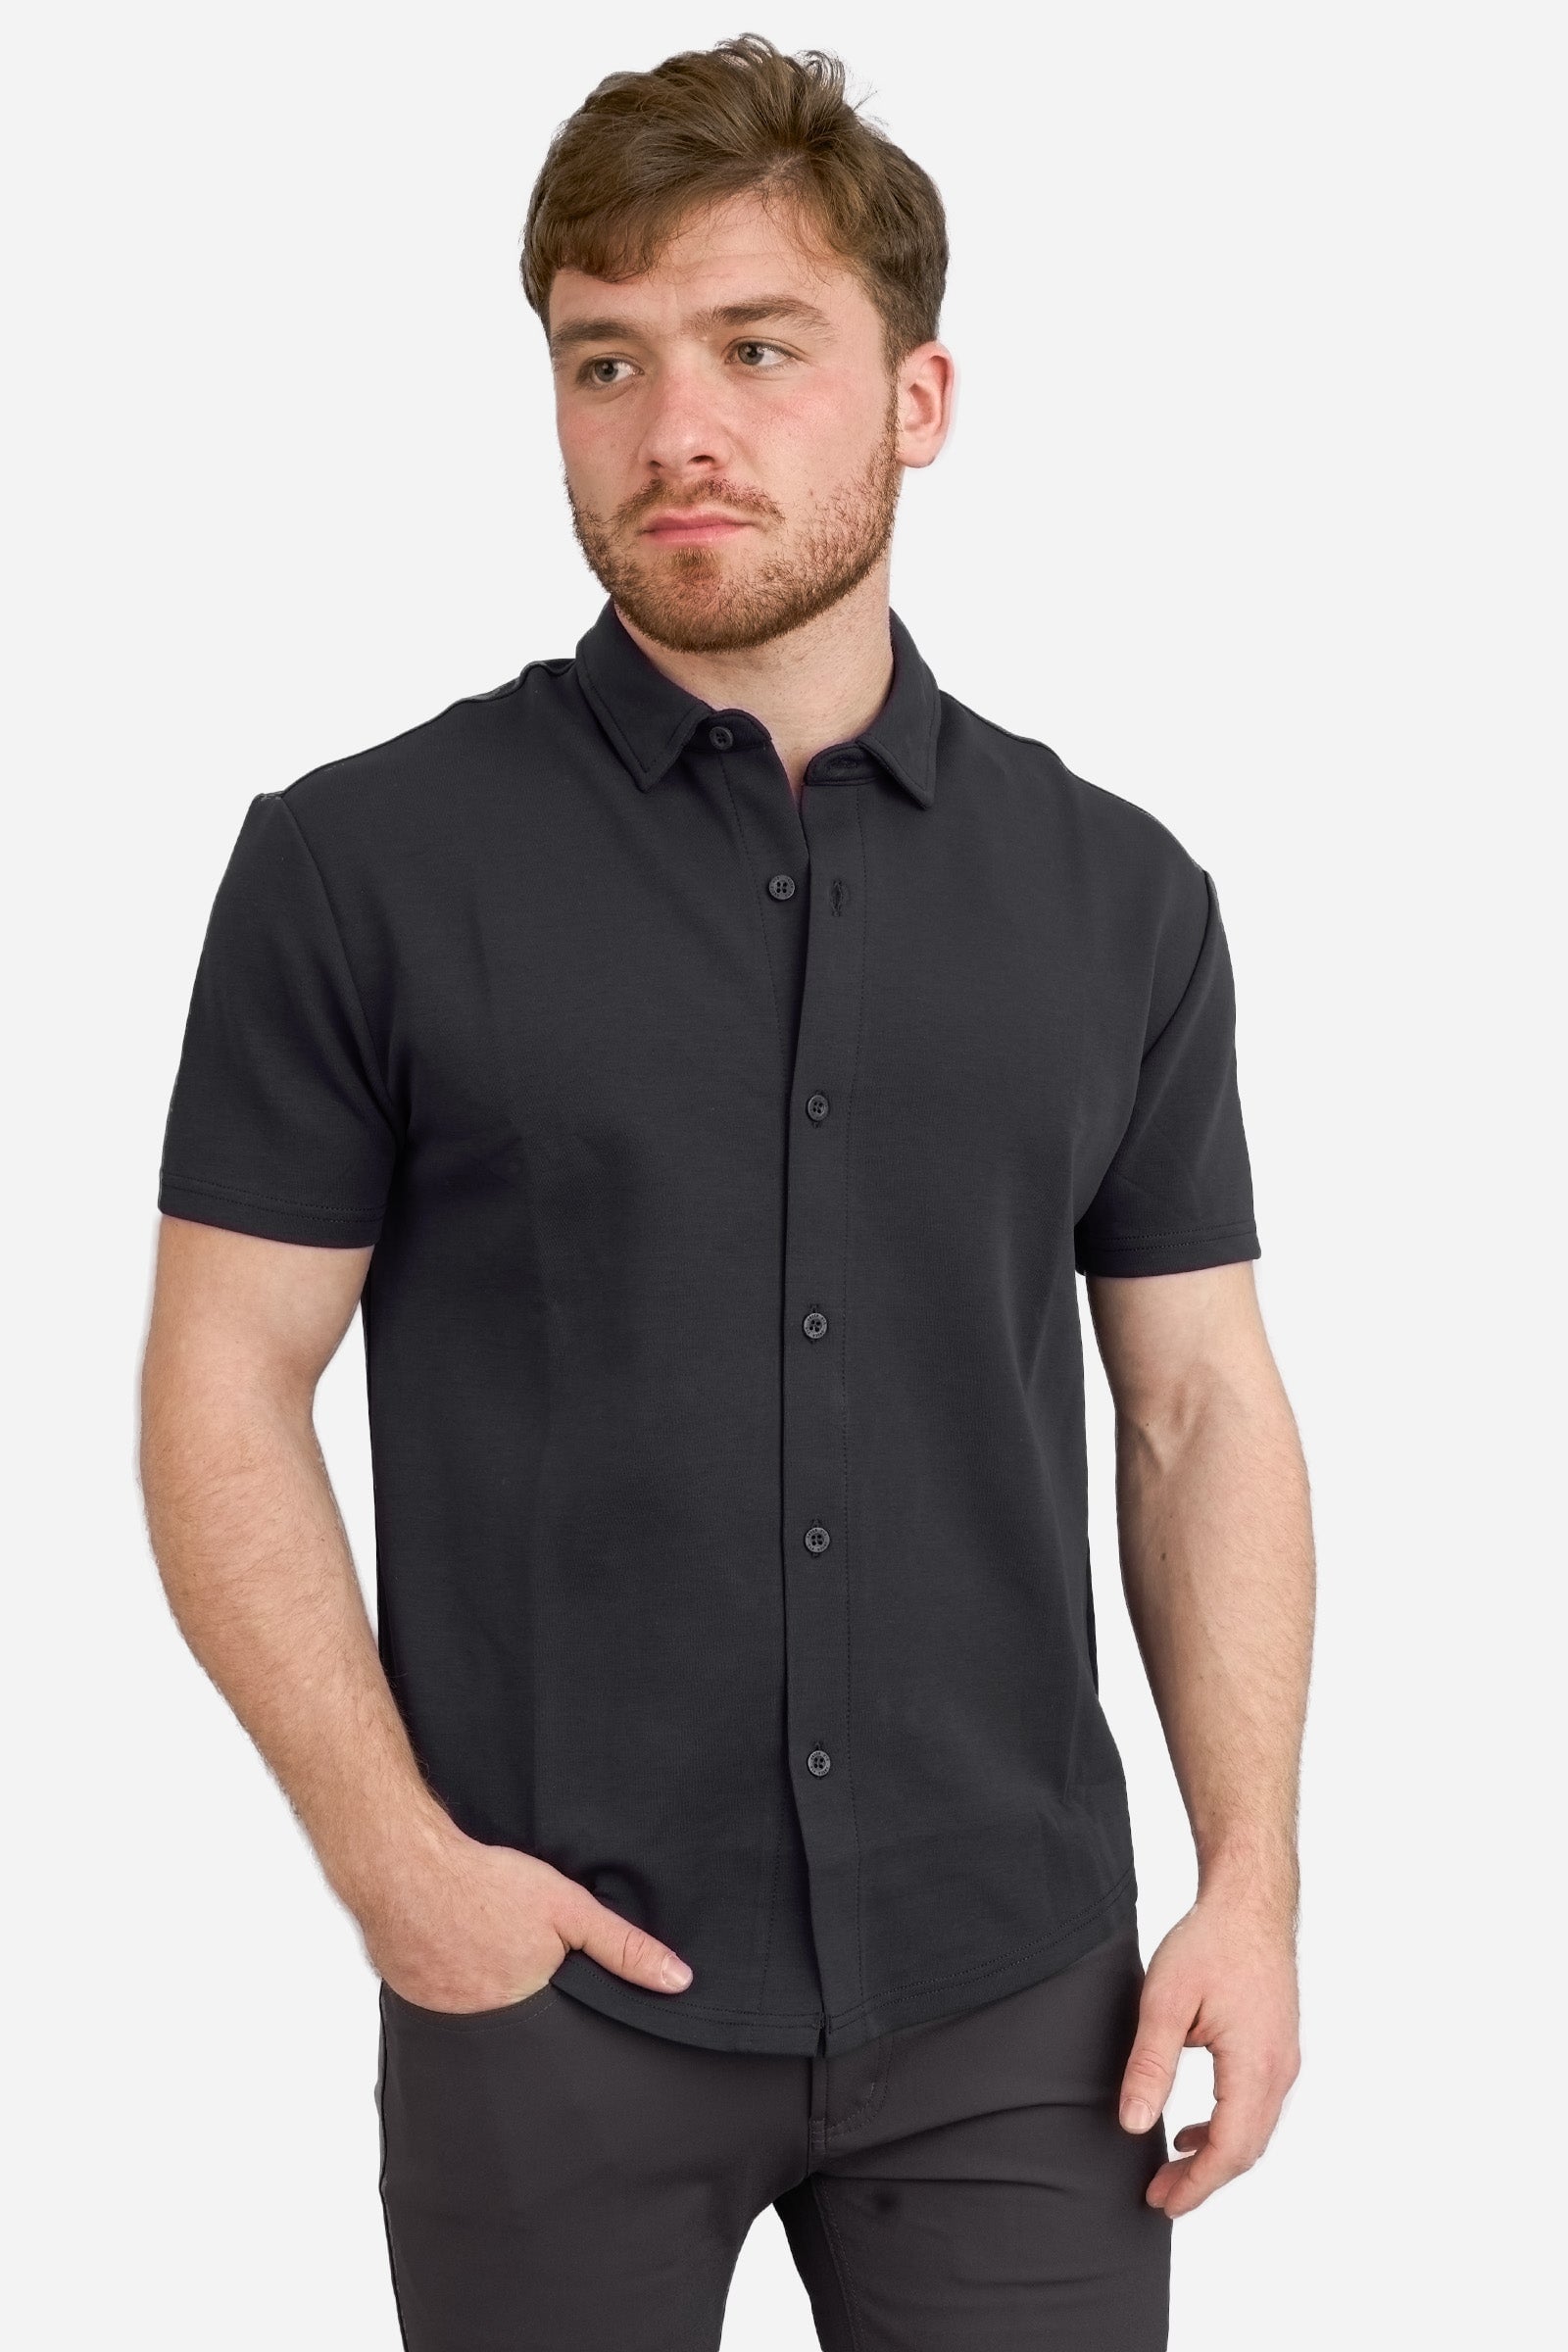 Flex Short Sleeve Button Down Shirt Black